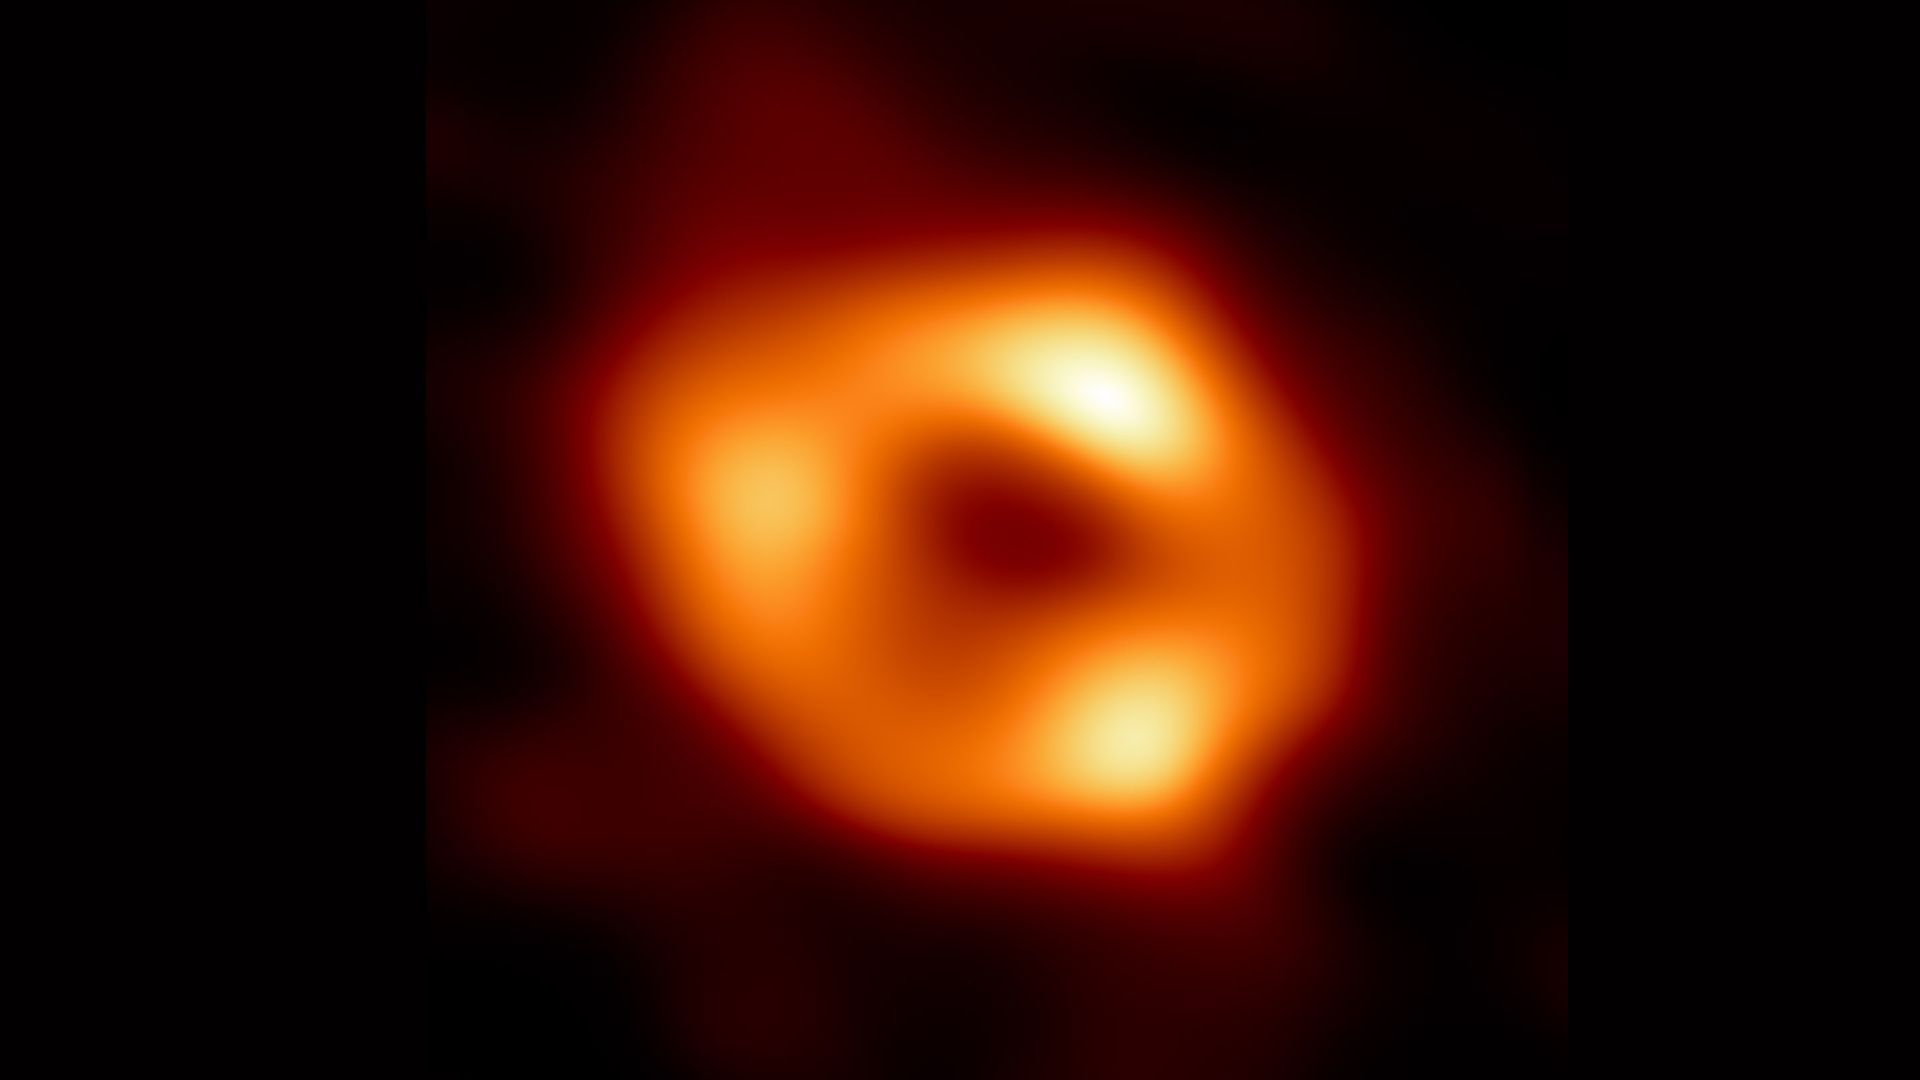 初めて撮影された天の川銀河の中心にある超大質量ブラックホール